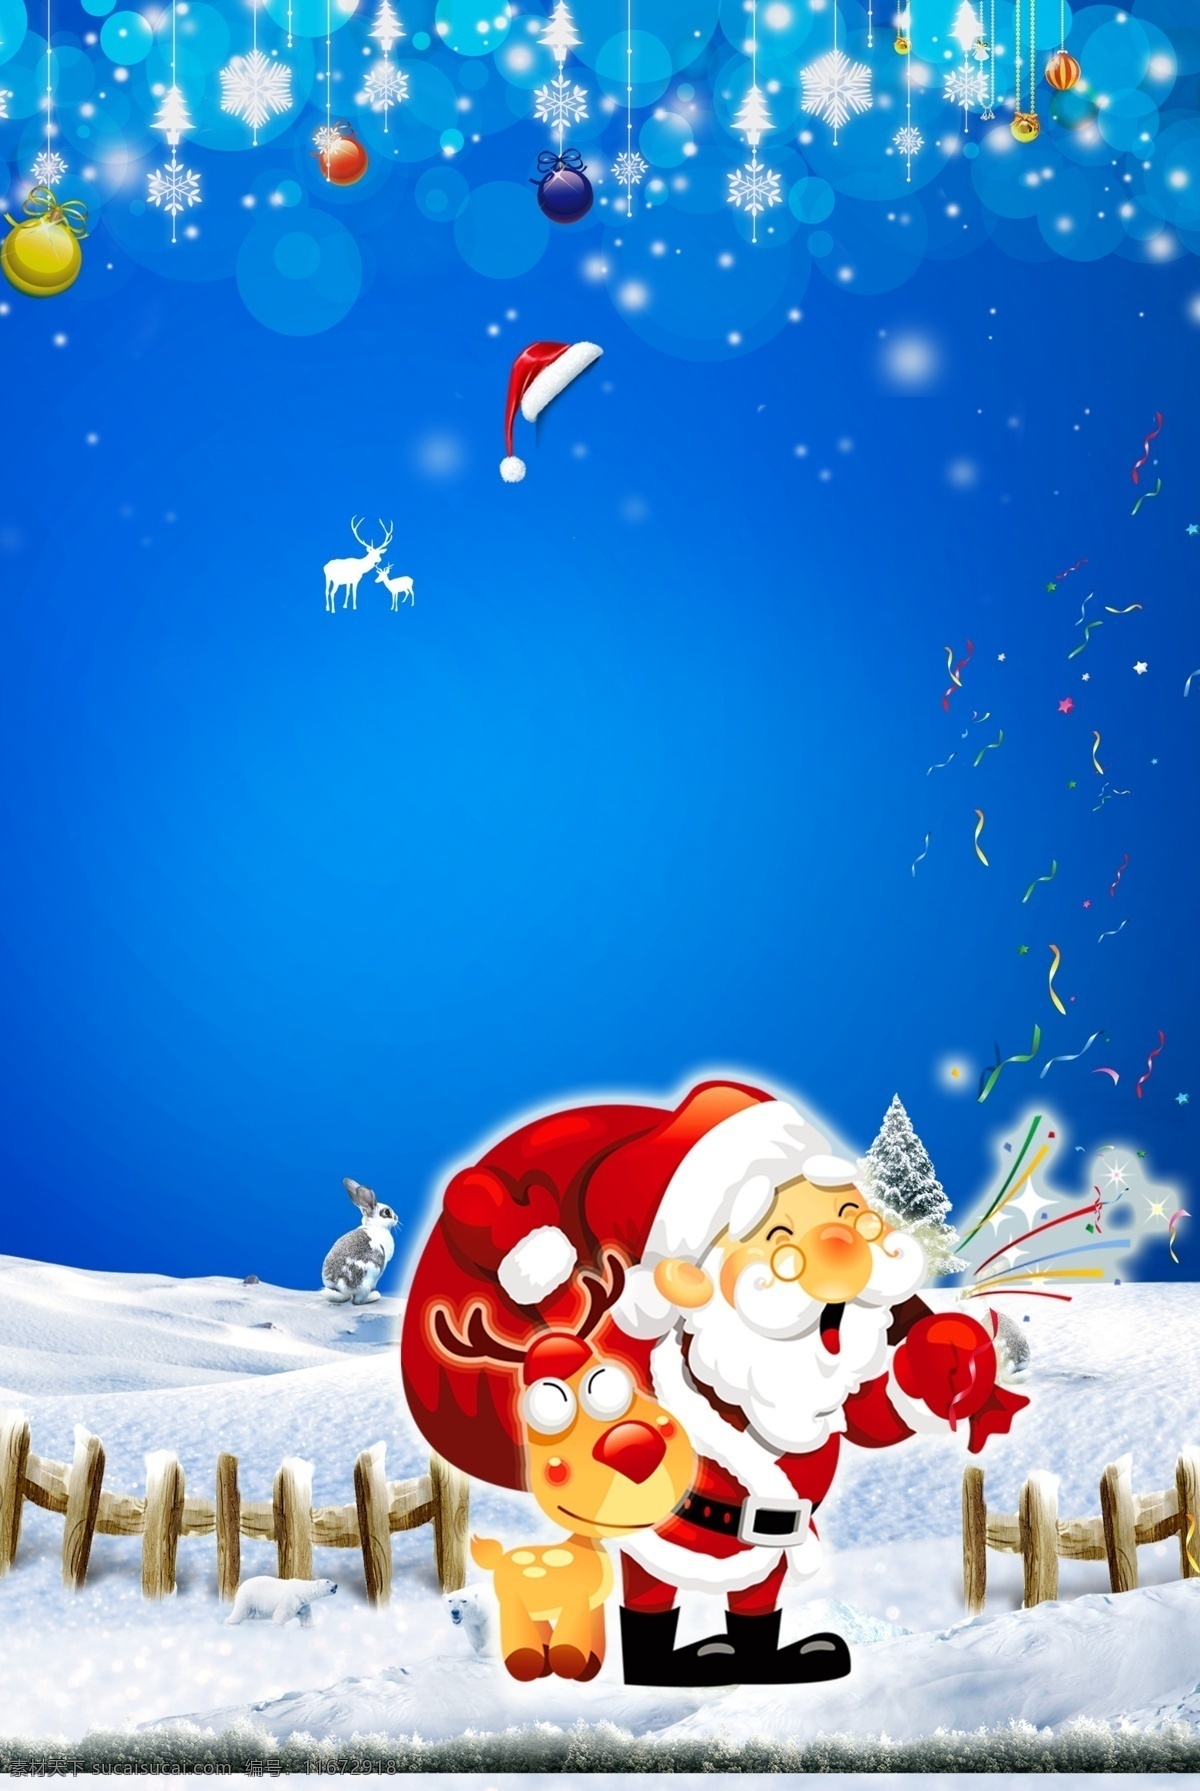 梦幻 雪花 圣诞 宣传 展板 背景 蓝色 浪漫 星星 礼物 礼盒 麋鹿 圣诞球 圣诞装饰 雪地 雪人